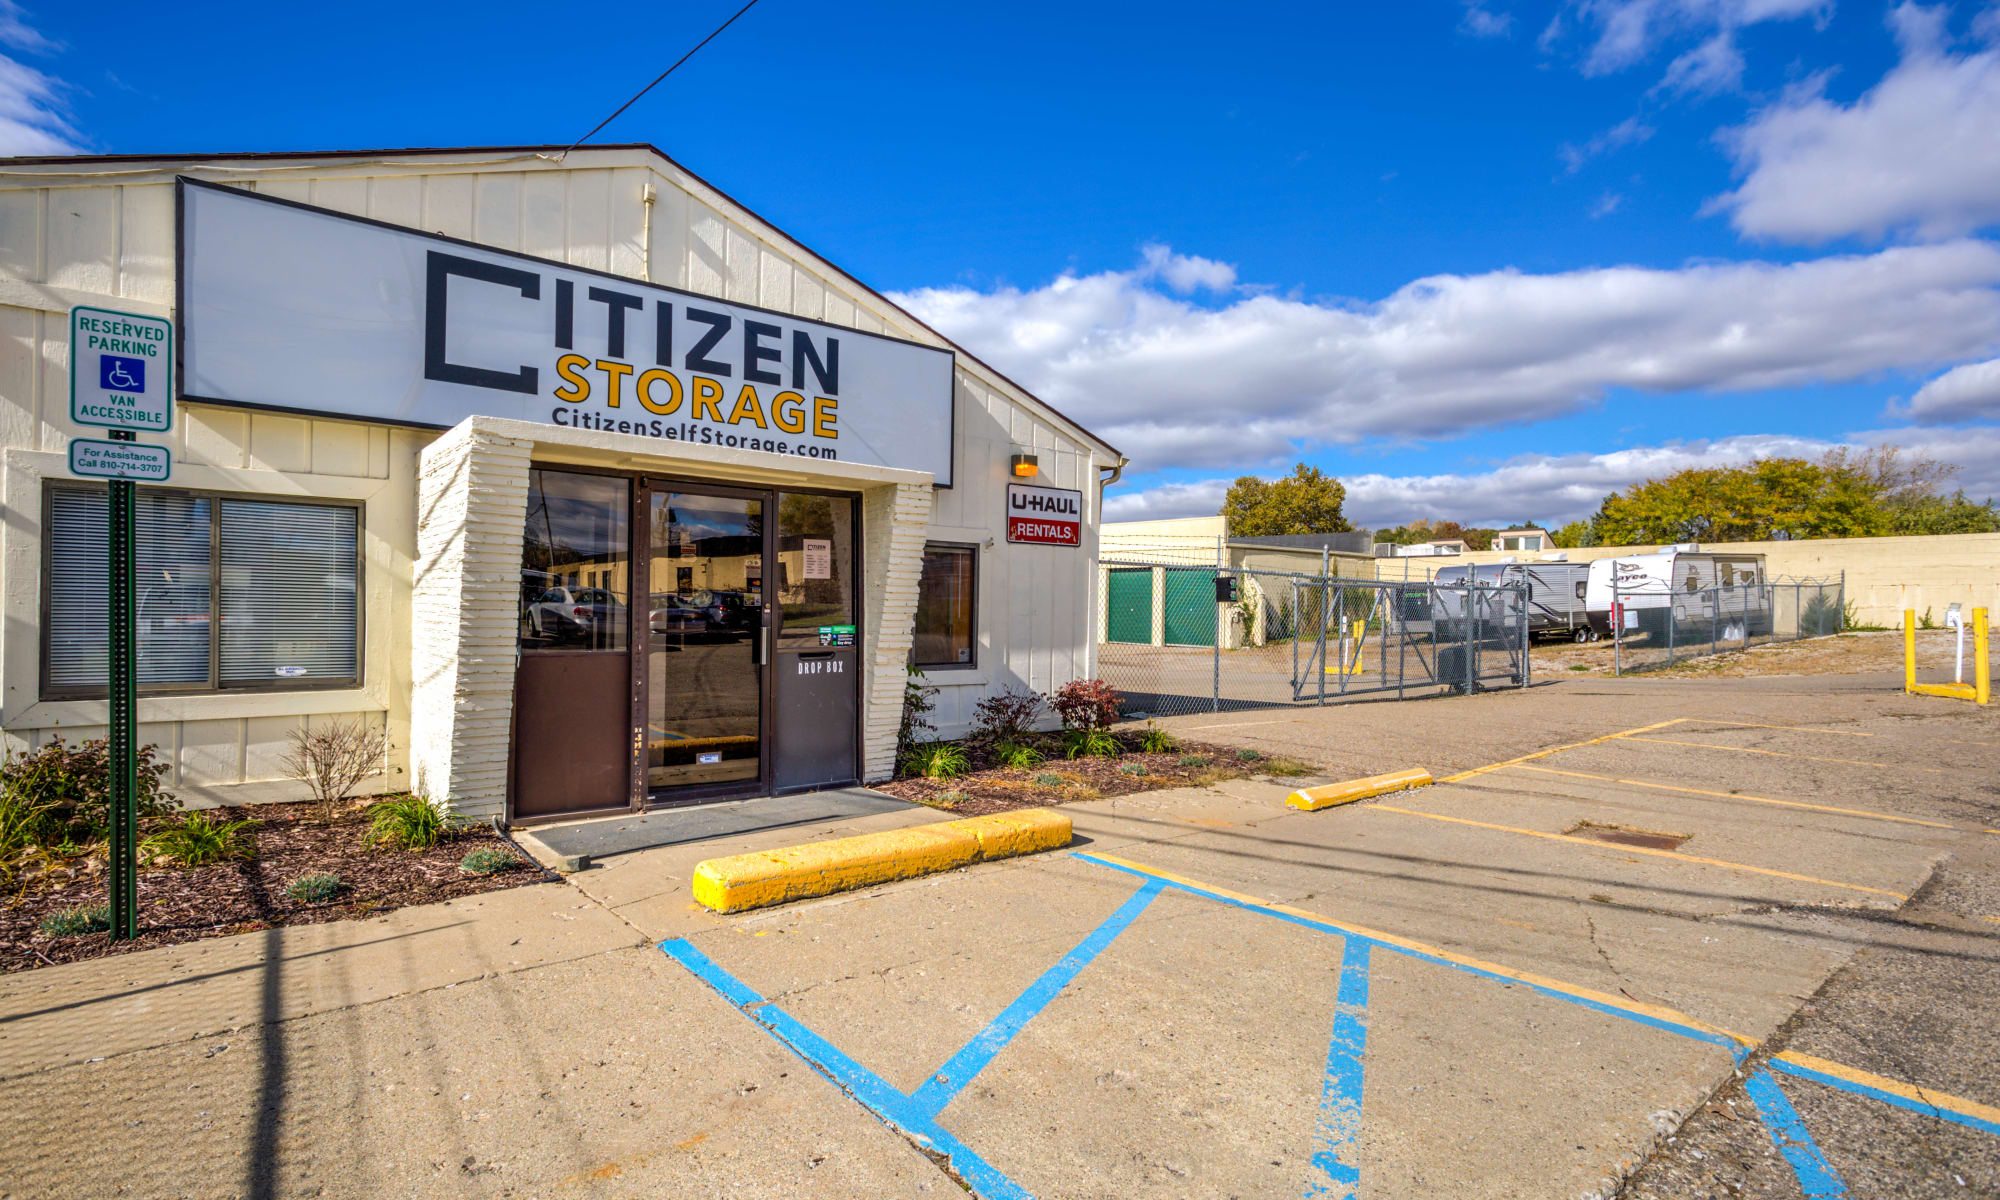 Citizen Storage in Fenton, Michigan